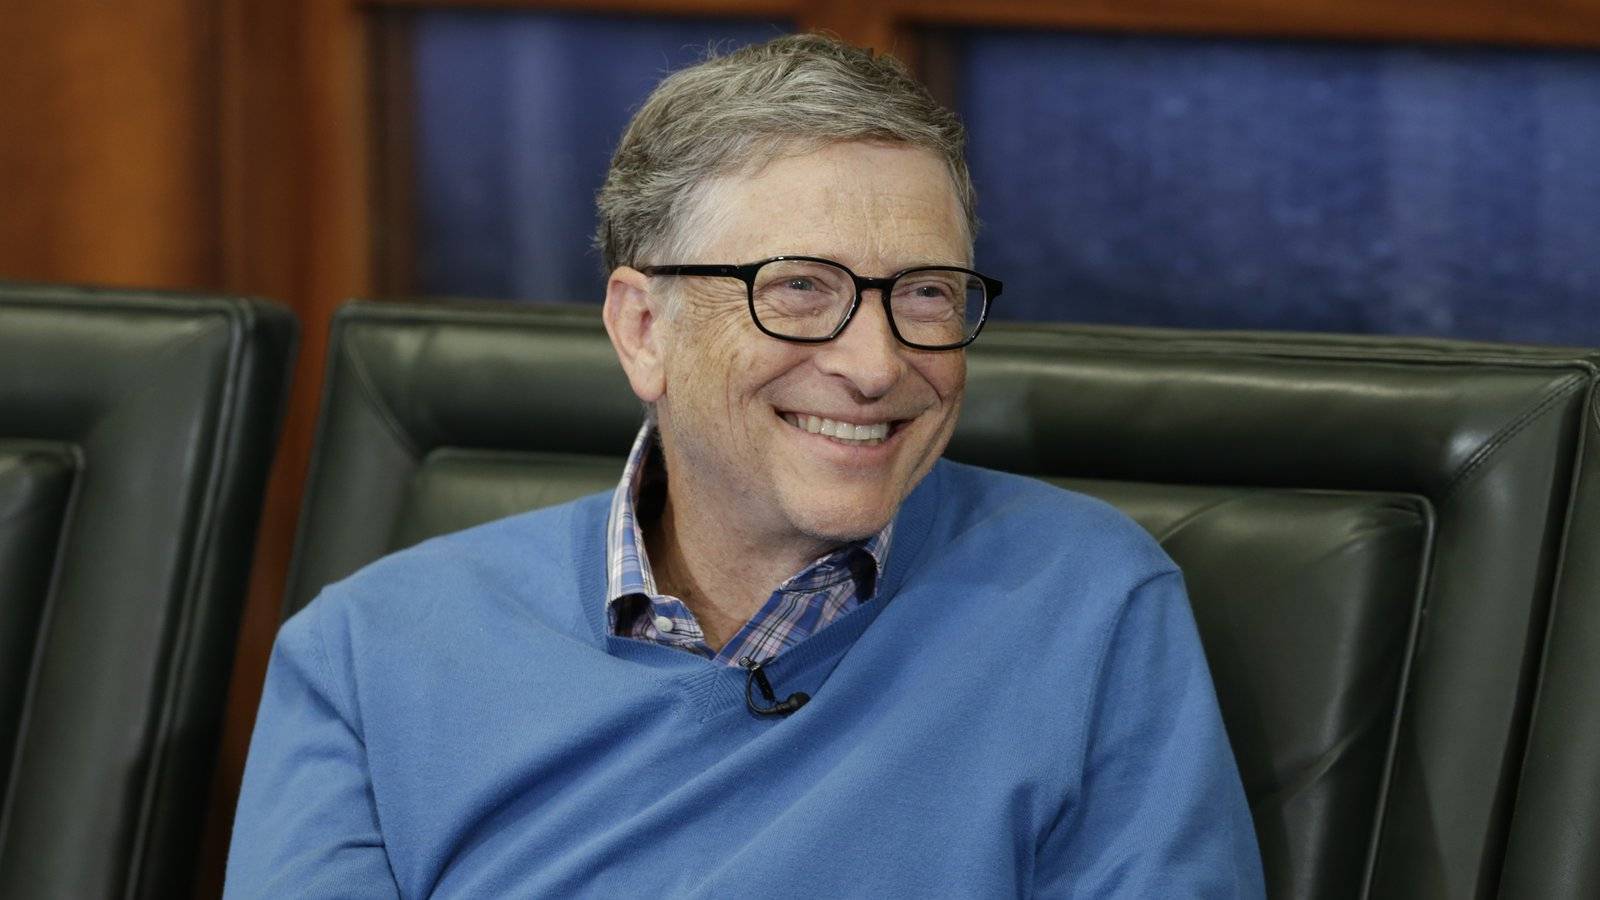 Bill Gates s-a mutat într-un conac în valoare de 12 milioane de dolari după divorț. Iată cum arată proprietatea